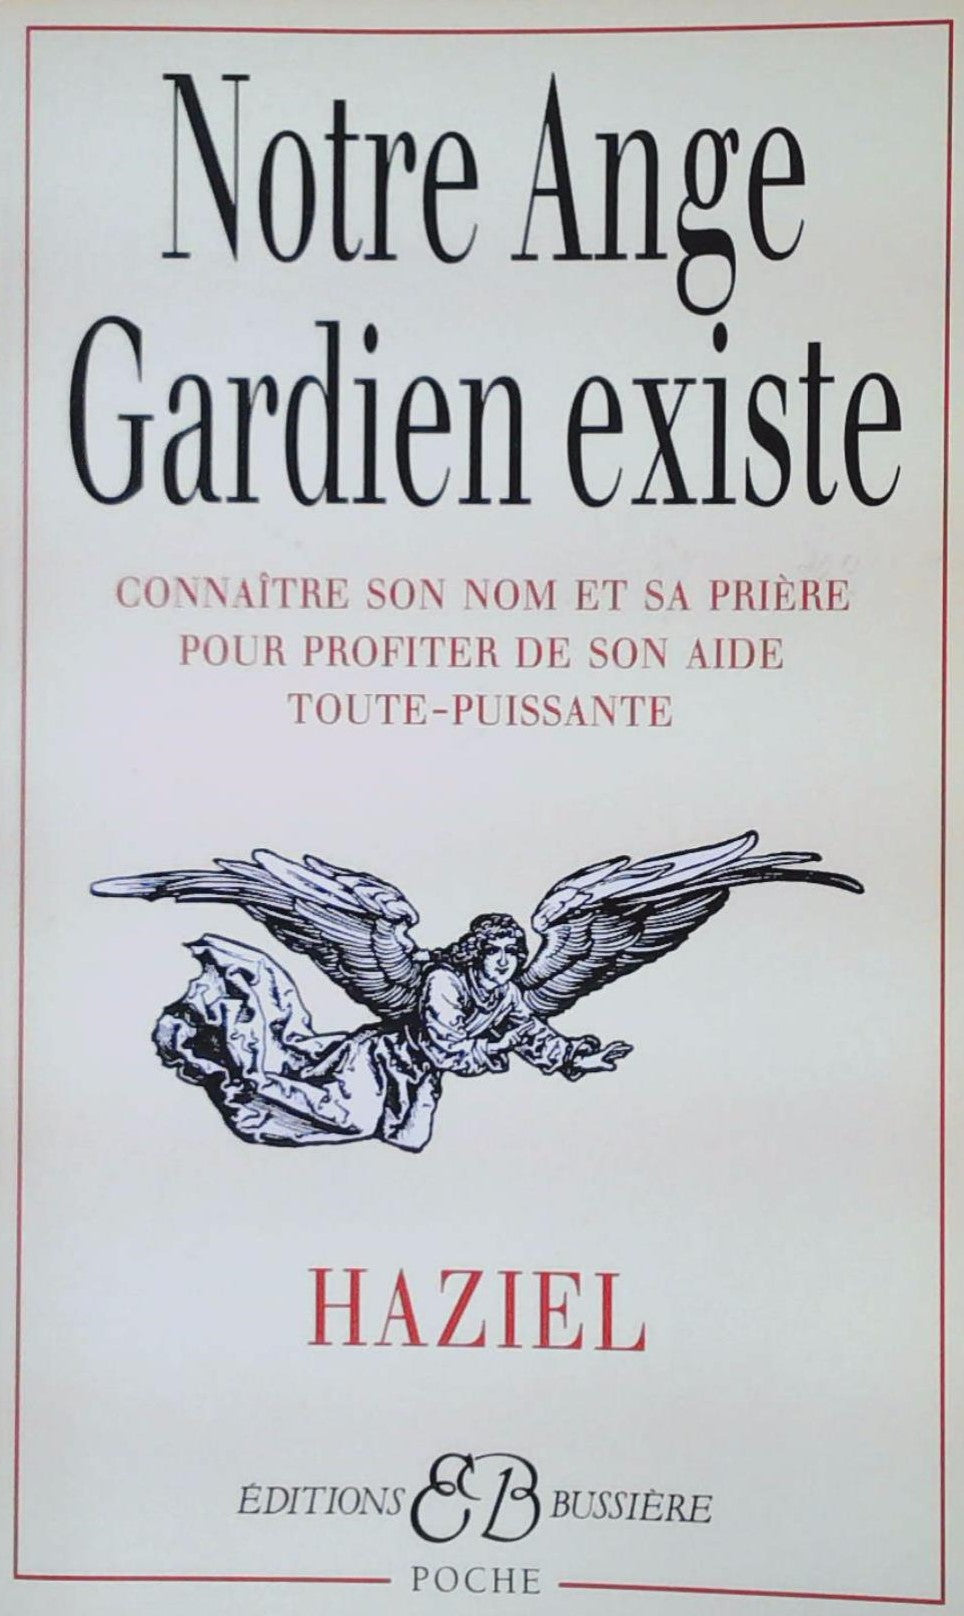 Livre ISBN 2850901008 Notre ange gardien existe (Haziel)